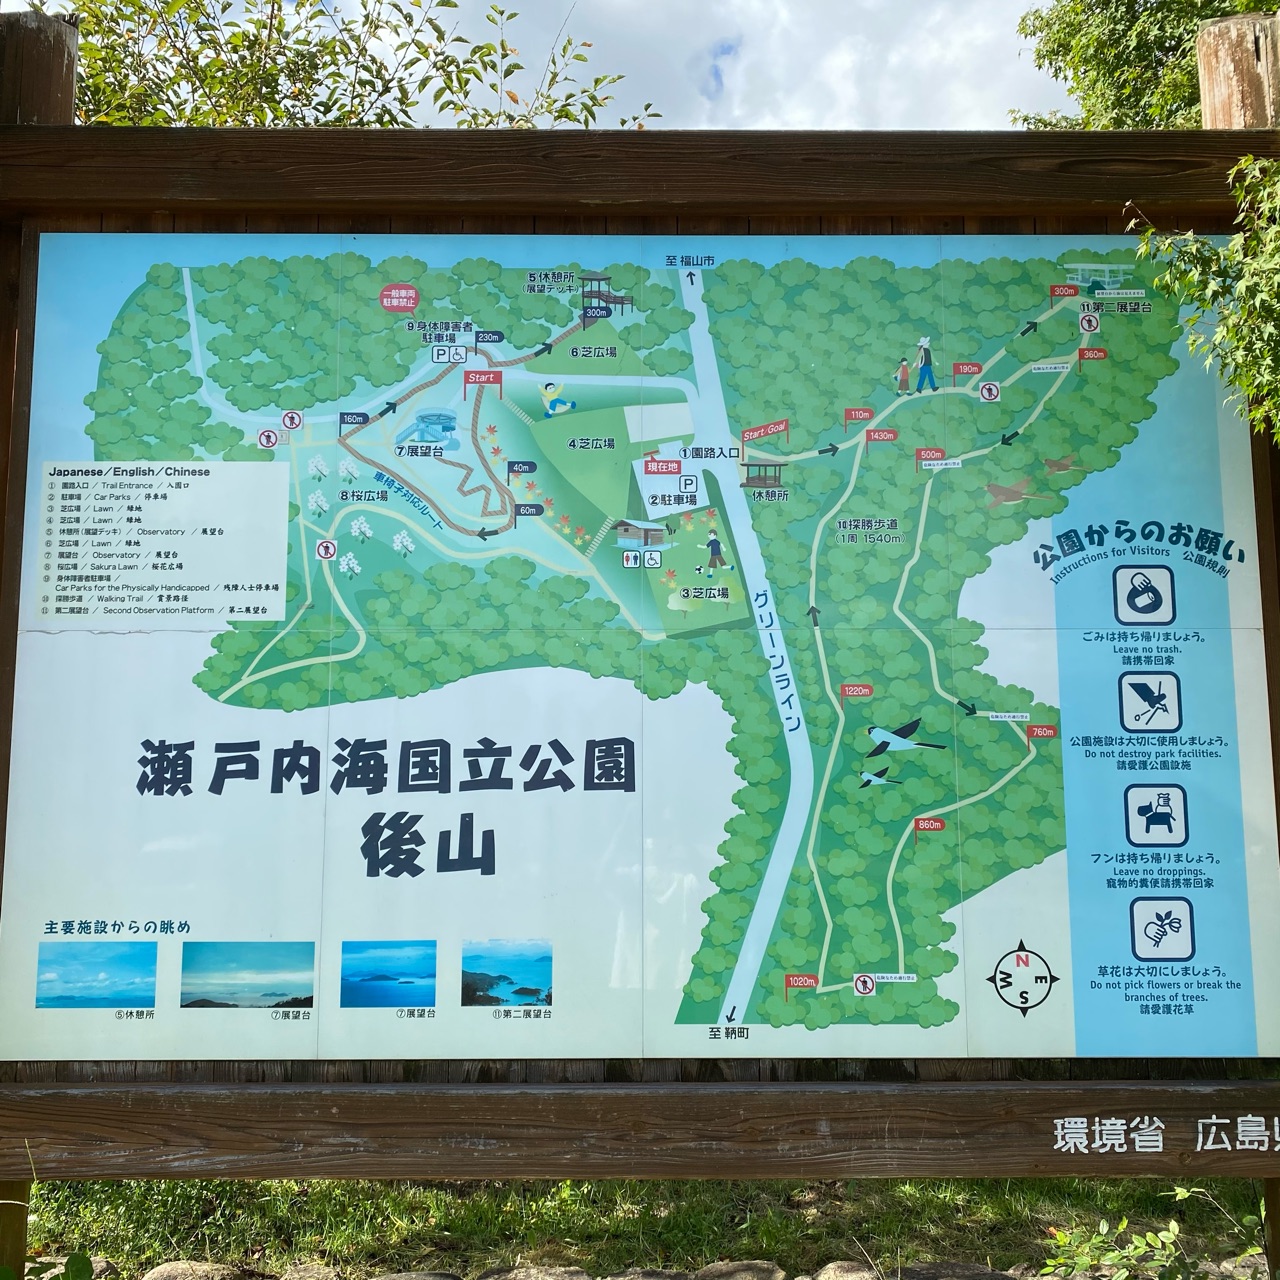 後山公園 展望台 マップ